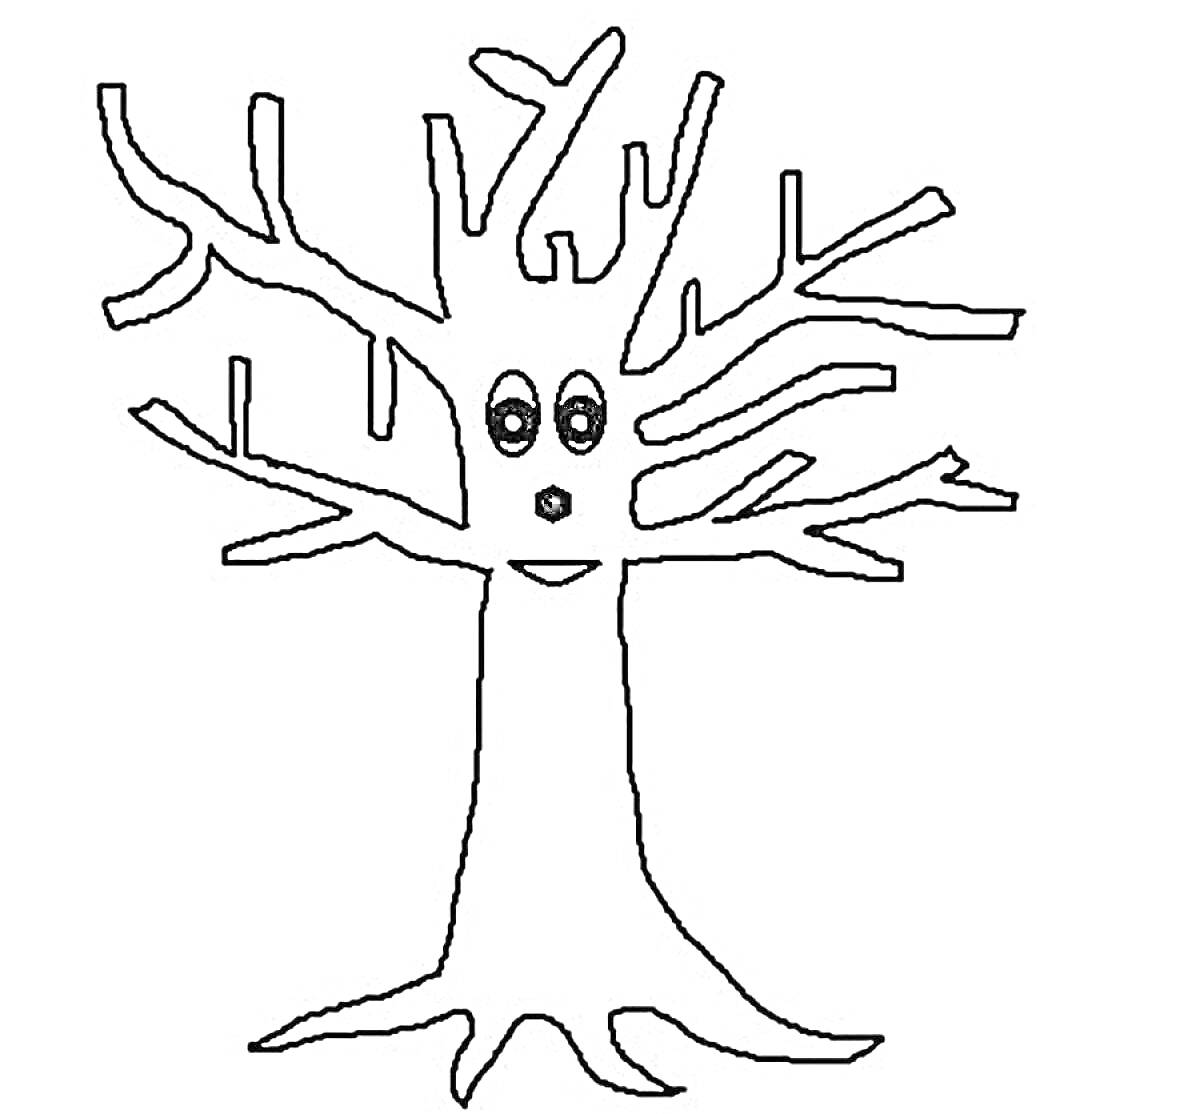 Раскраска Дерево с глазами, ртом и носом, с ветвями без листьев